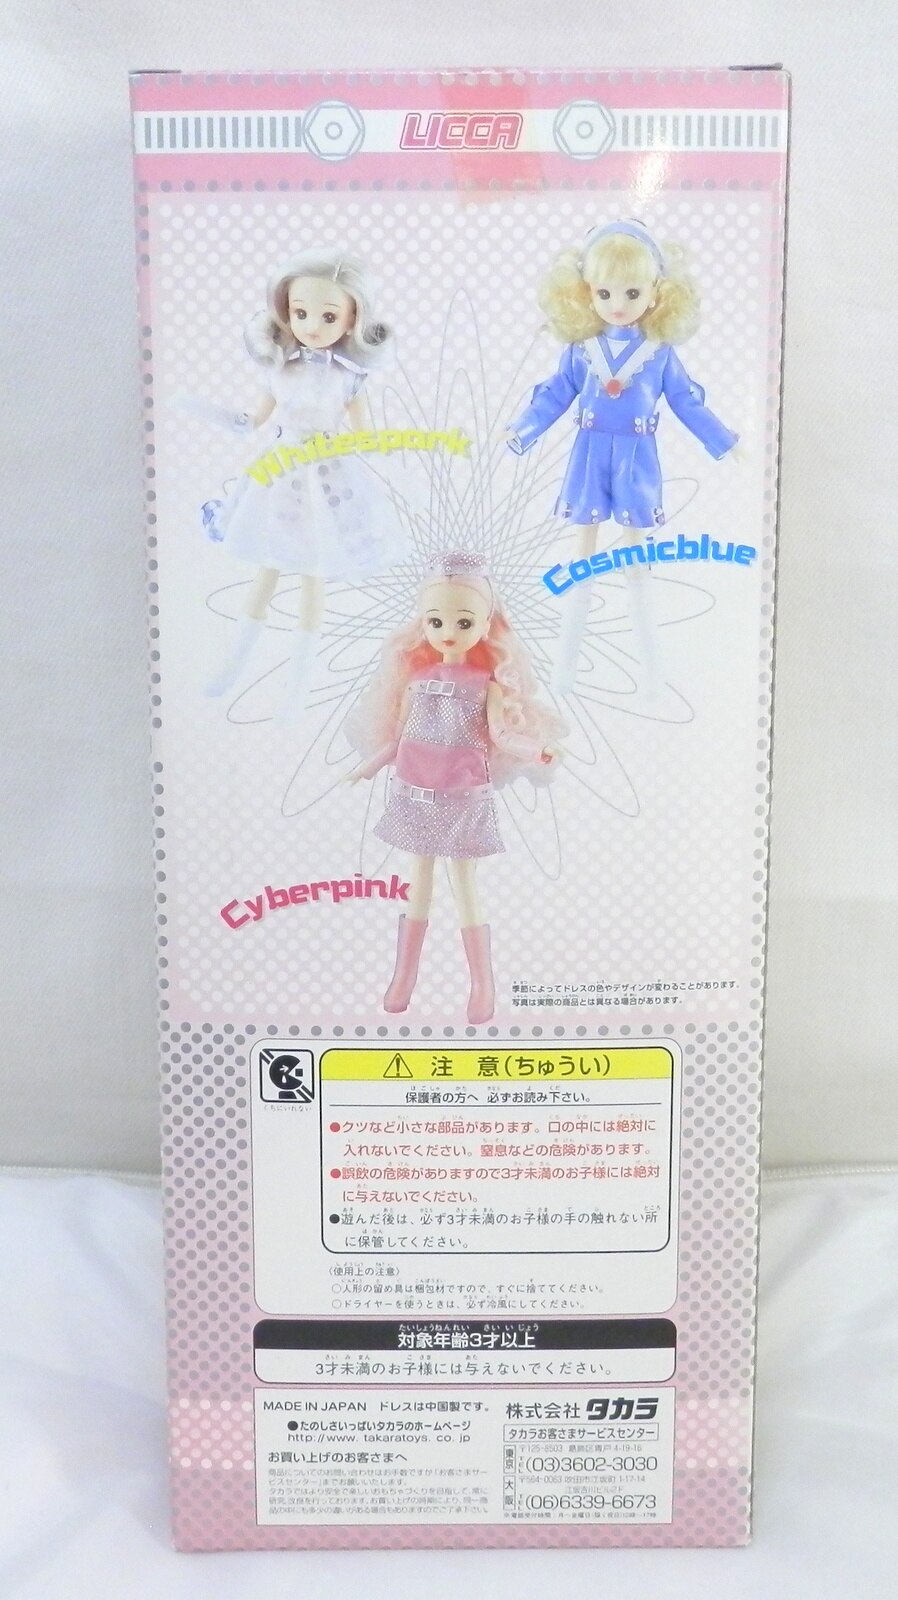 リカちゃん人形 ファッションカレンダー2001 コスミックブルー 未開封 ...